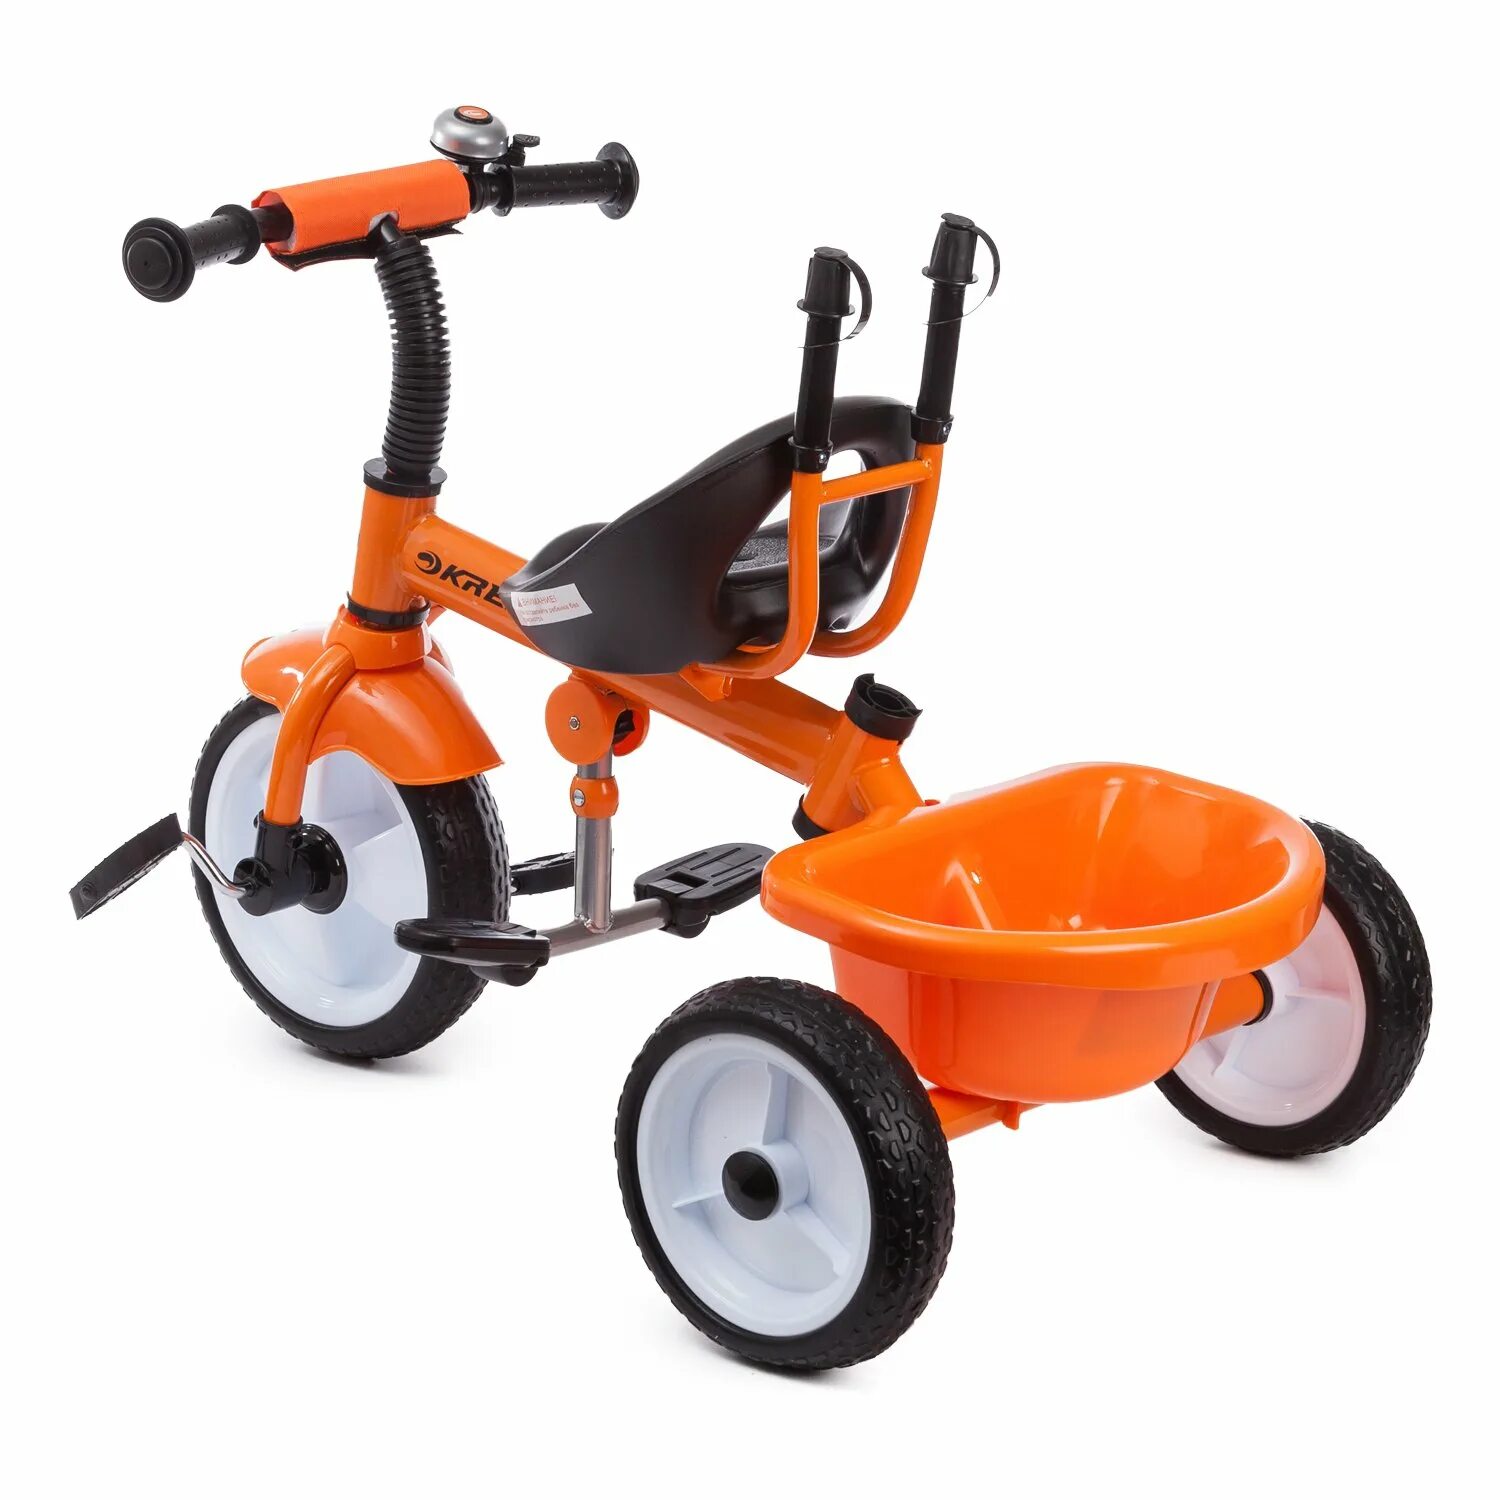 Kreiss велосипед трехколесный с ручкой. Детский велосипед Kreiss трехколесный. Велосипед Kreiss трехколесный 3. Велосипед Kreiss оранжевый.